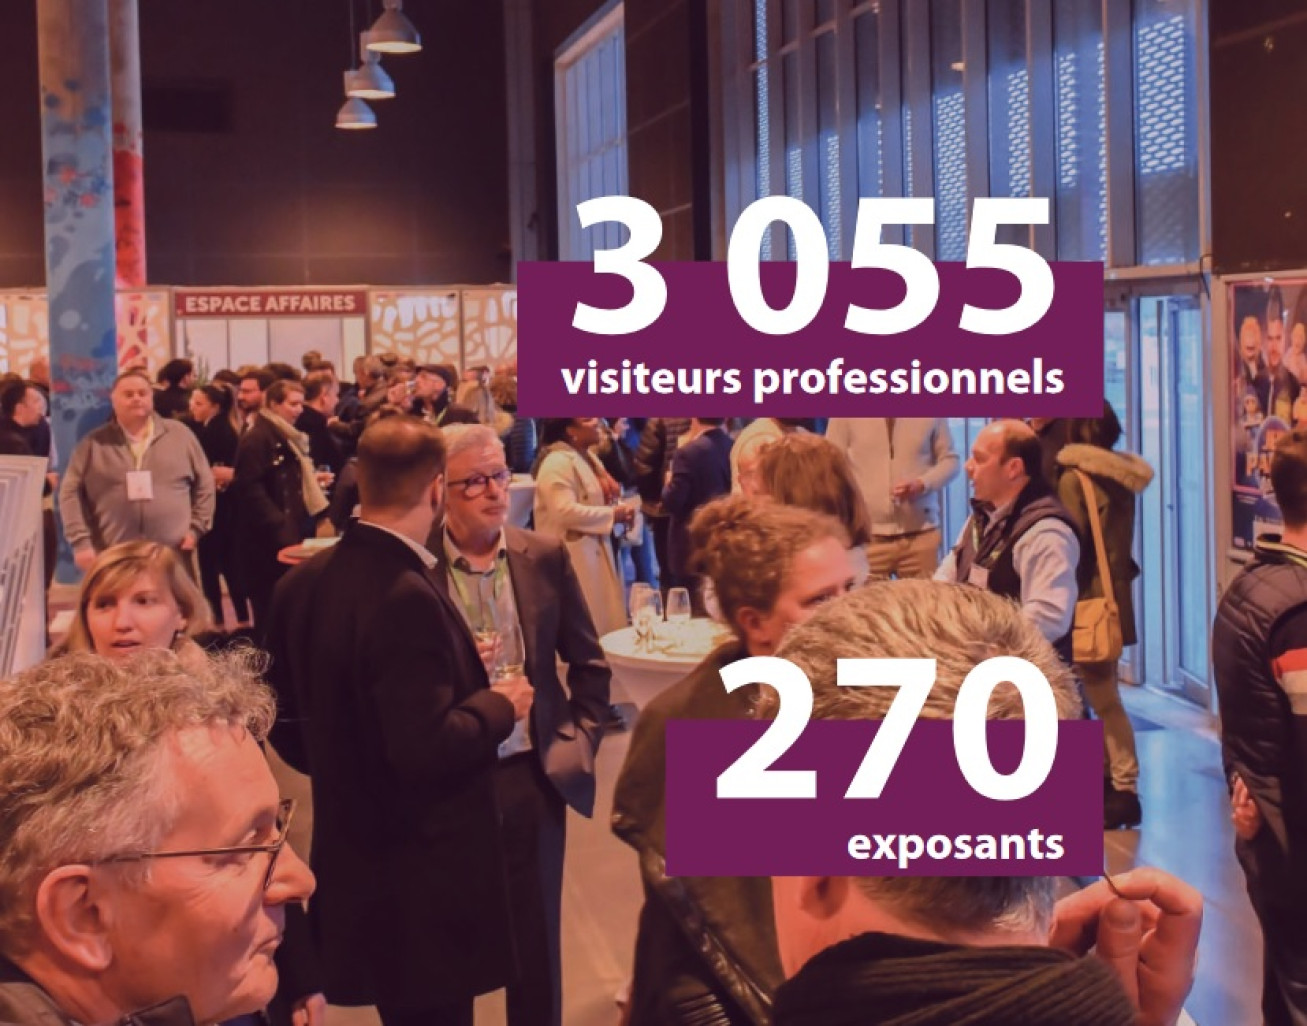 La 1ère édition a accueilli 3 055 visiteurs professionnels et 270 exposants (©Salon Vinéquip).